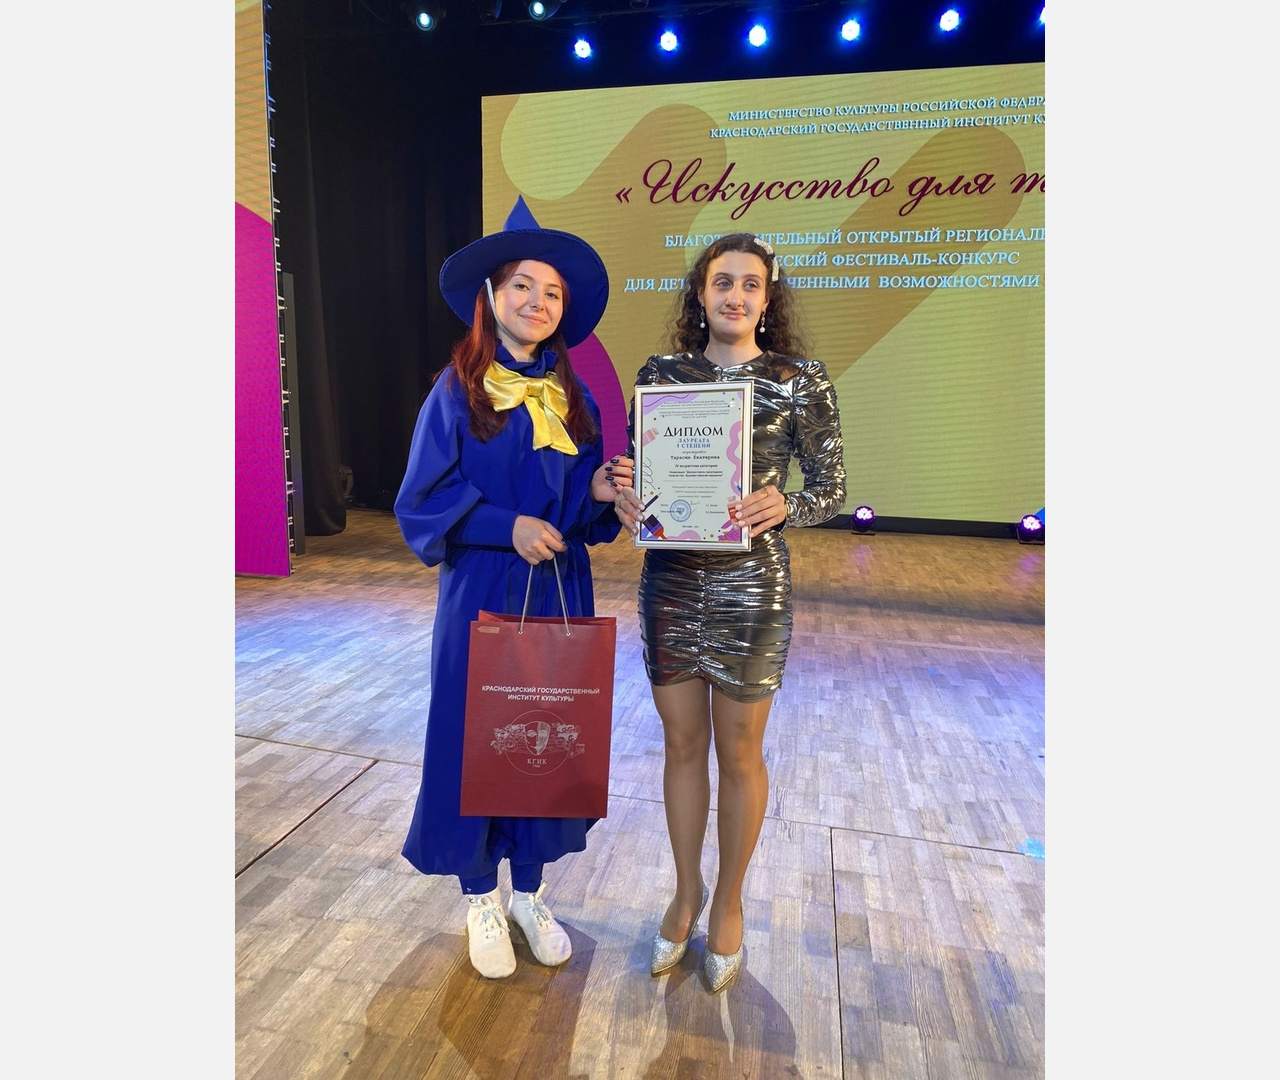 Две воспитанницы интерната №3 Армавира стали победительницами фестиваля "Искусство для тебя"